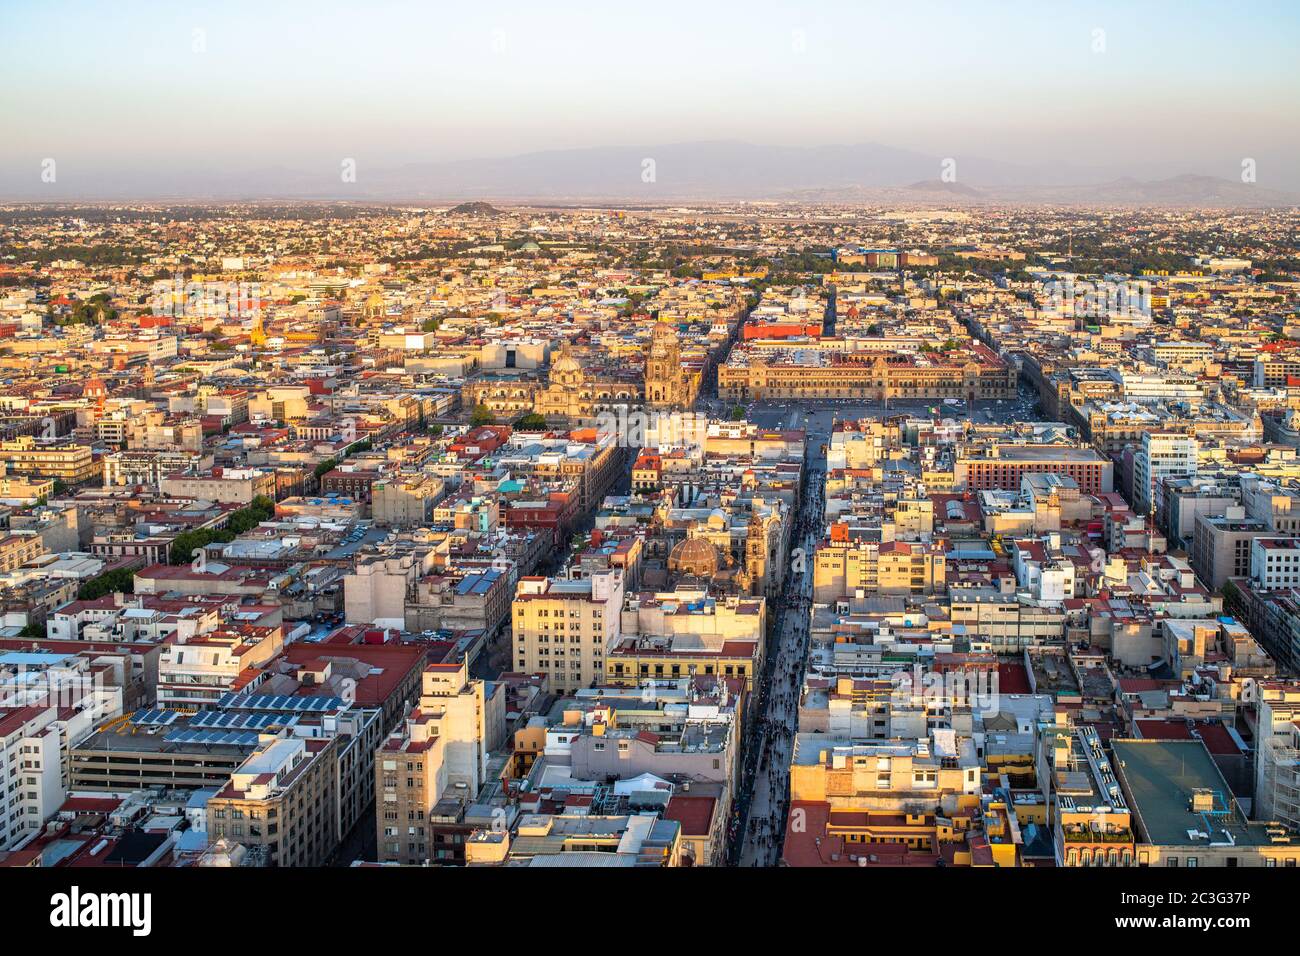 Vista panorámica del centro de la ciudad de México. Foto de stock